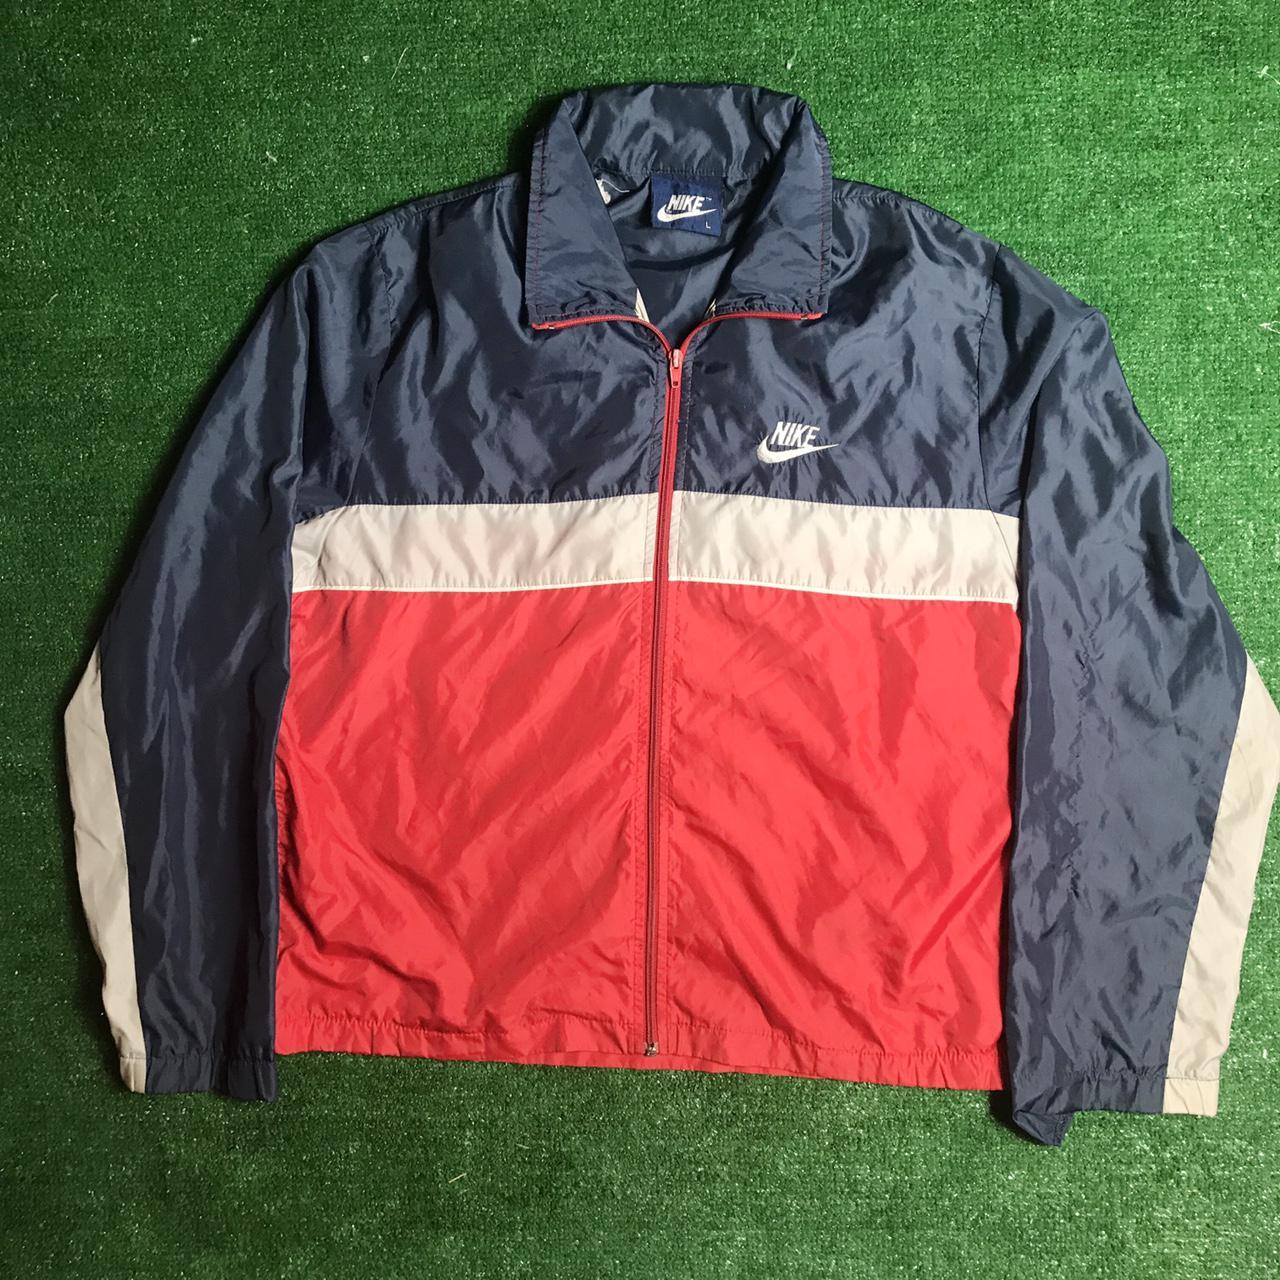 Product Image 1 - Vintage 80s nike jacket size